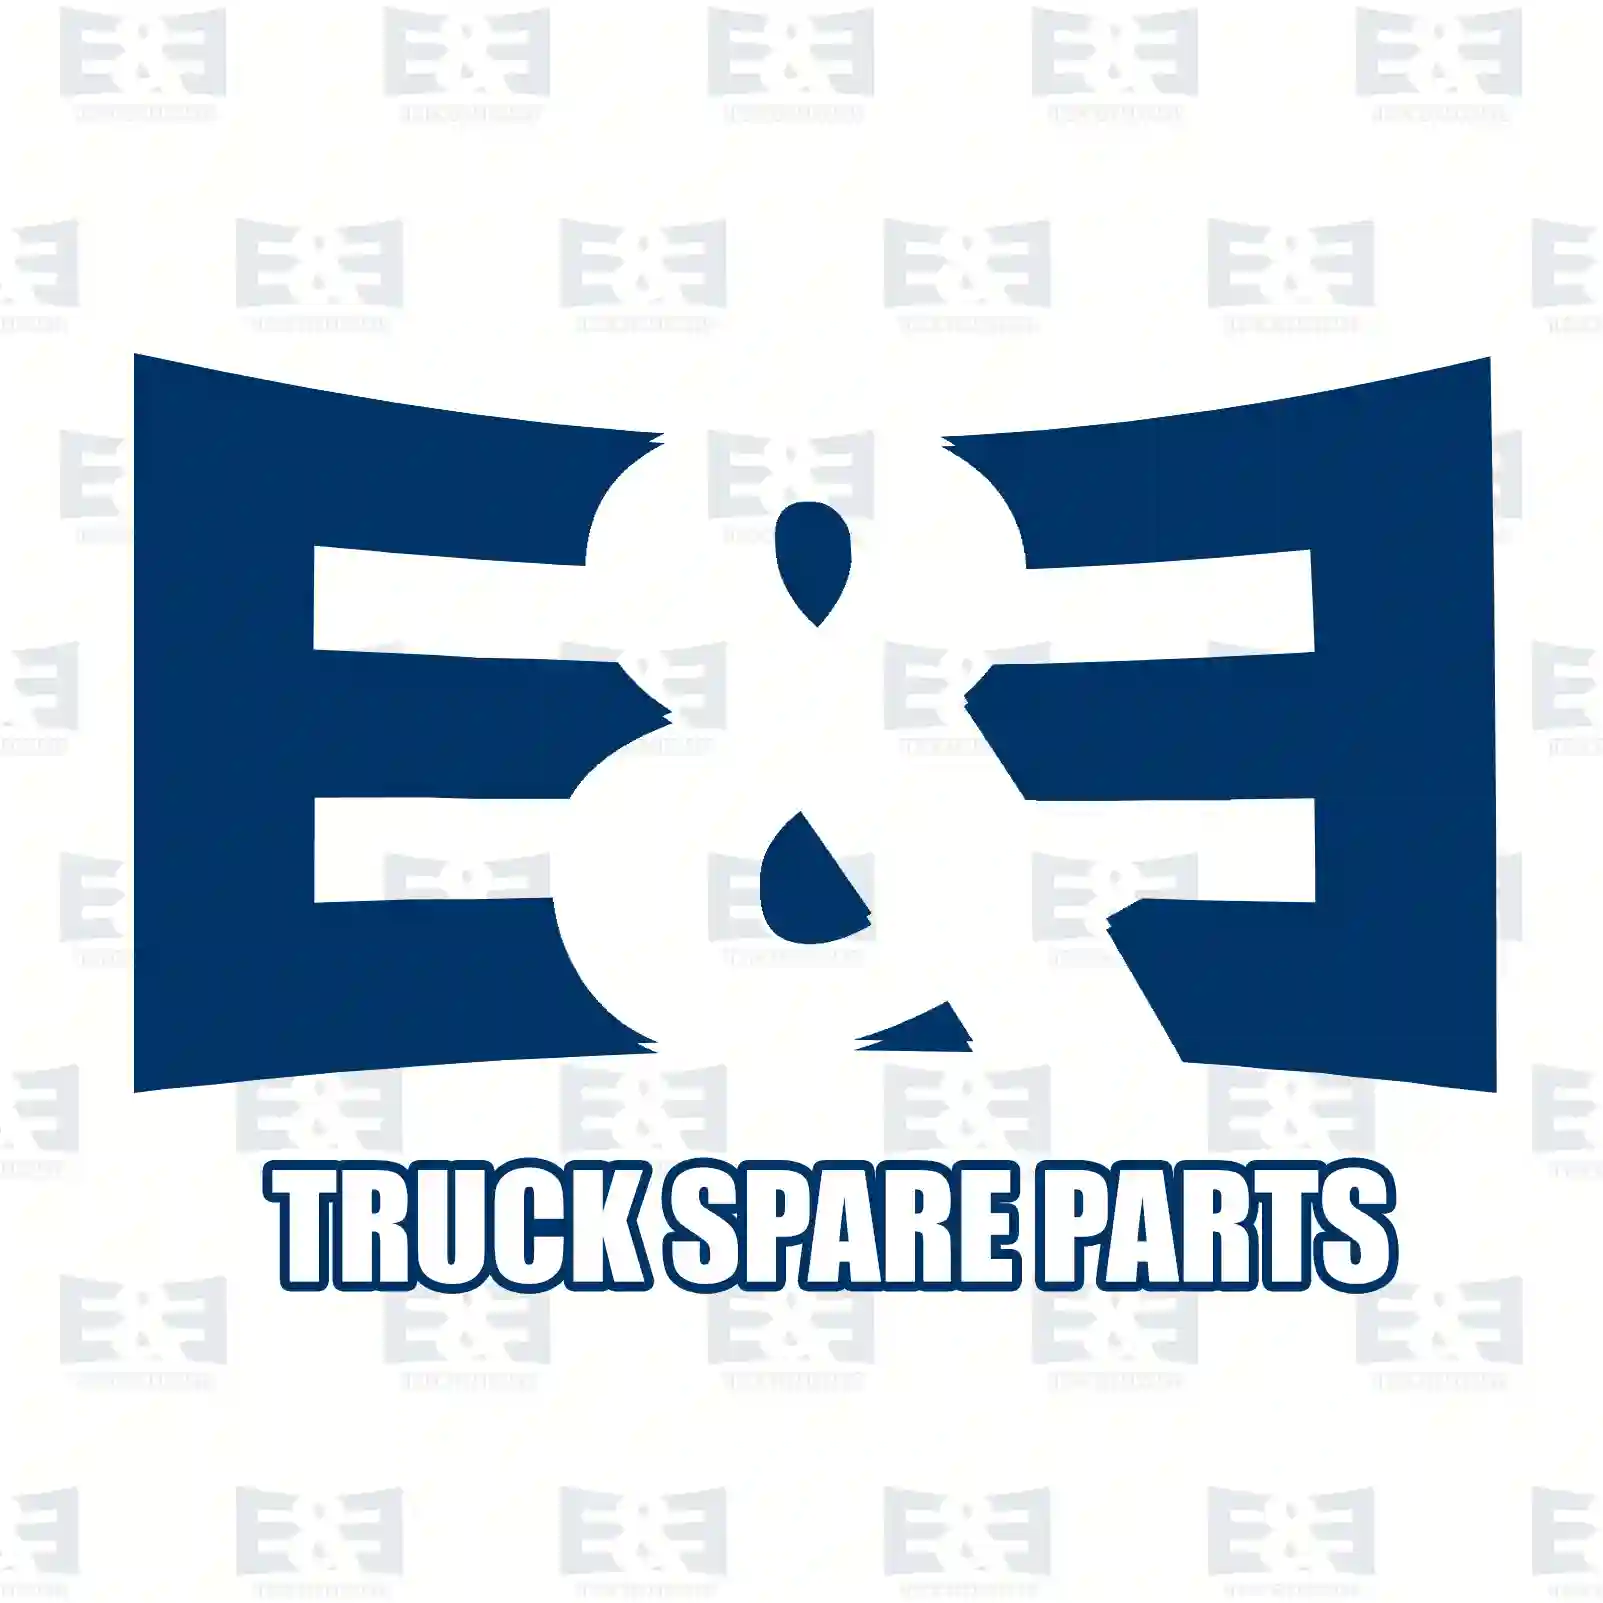 Cabin shock absorber, 2E2275102, 1466185, 1943268, 2023668, ZG41148-0008, ||  2E2275102 E&E Truck Spare Parts | Truck Spare Parts, Auotomotive Spare Parts Cabin shock absorber, 2E2275102, 1466185, 1943268, 2023668, ZG41148-0008, ||  2E2275102 E&E Truck Spare Parts | Truck Spare Parts, Auotomotive Spare Parts